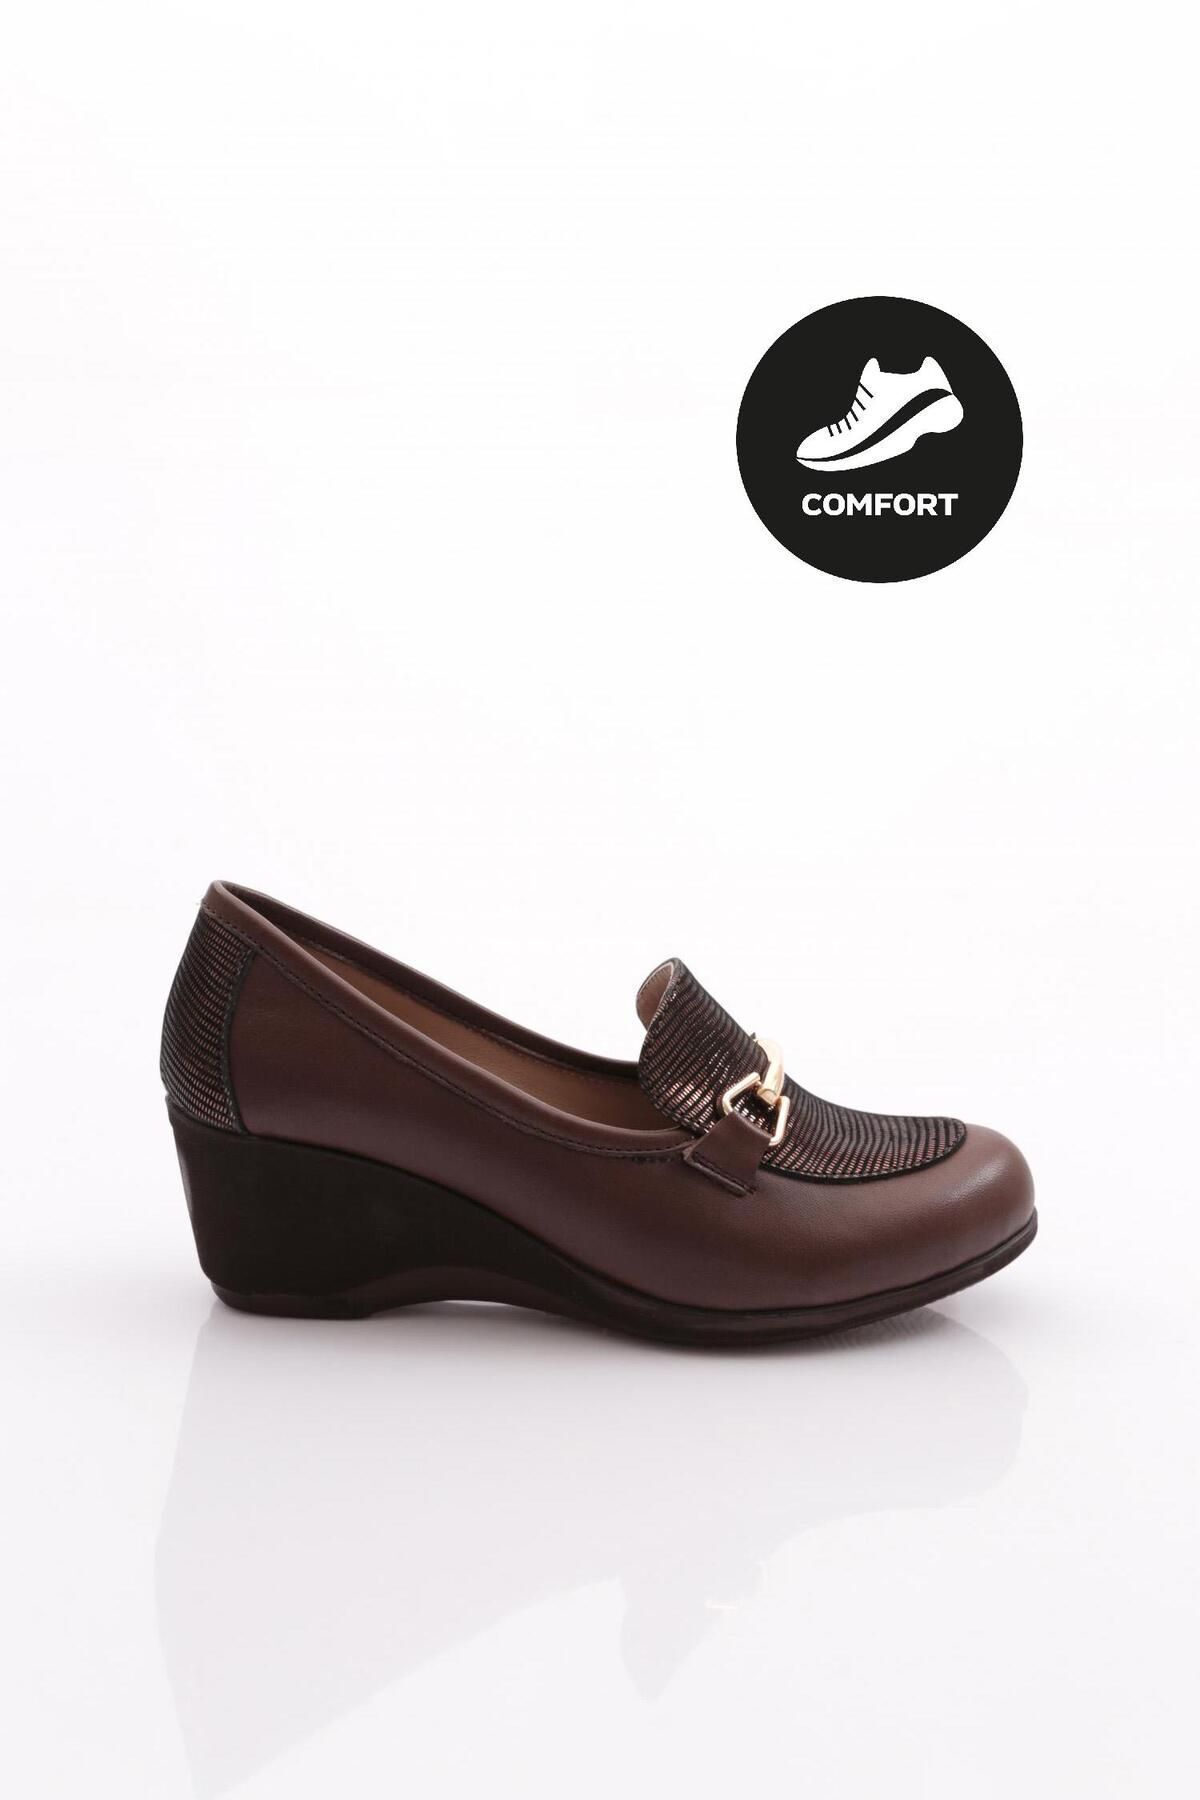 Dgn 2352 Kadın Metal Aksesuarlı Comfort Ayakkabı Hakiki Deri Kahve